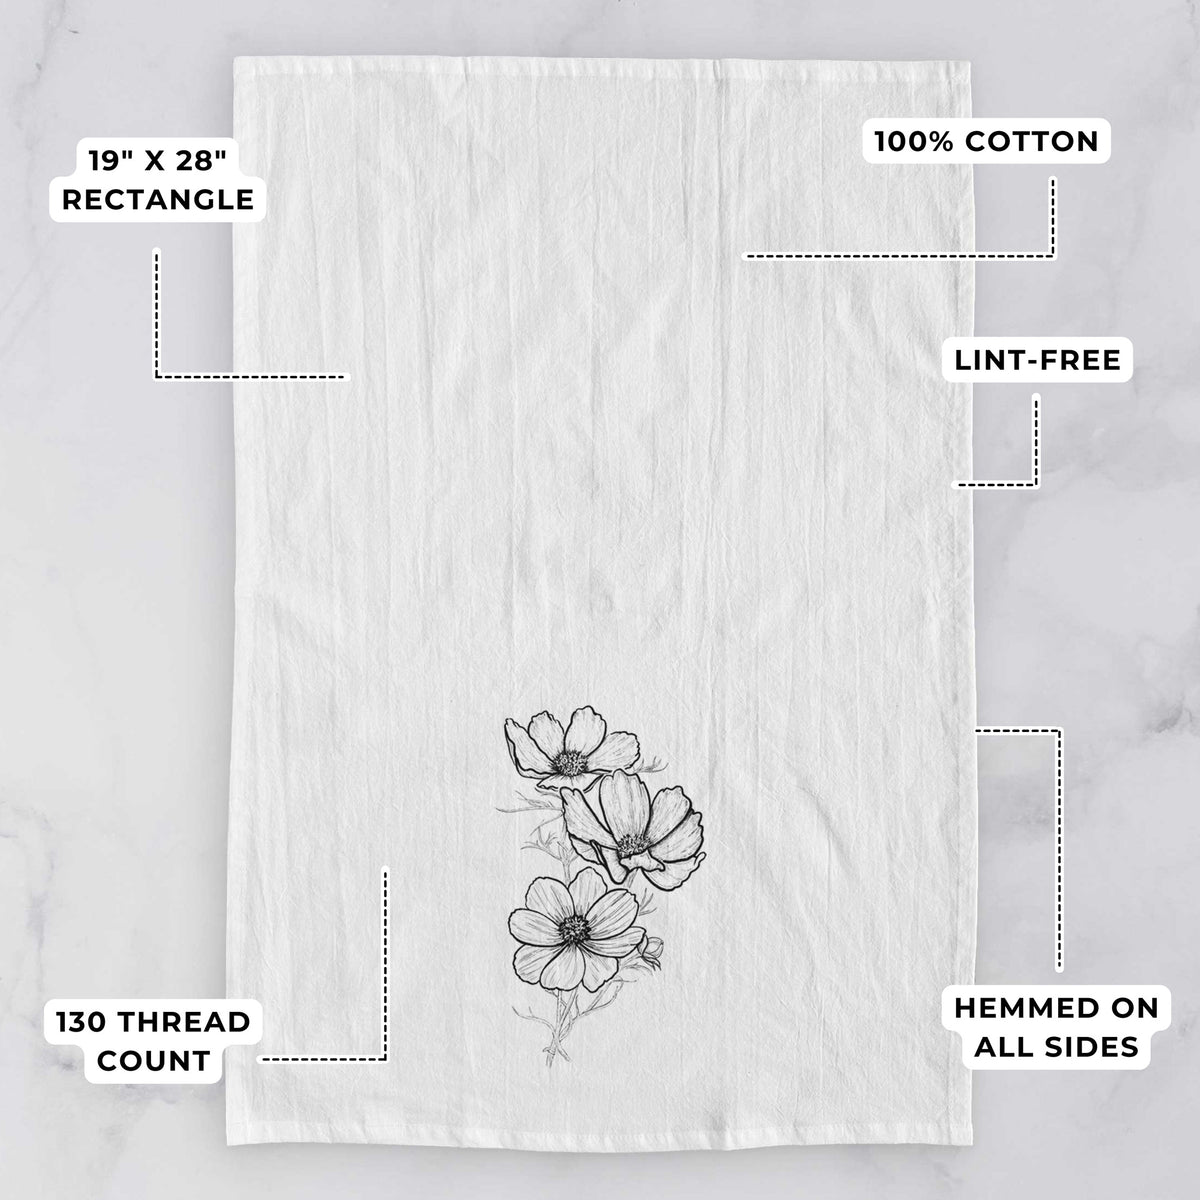 Garden Cosmos - Apollo White Cosmos bipinnatus Tea Towel